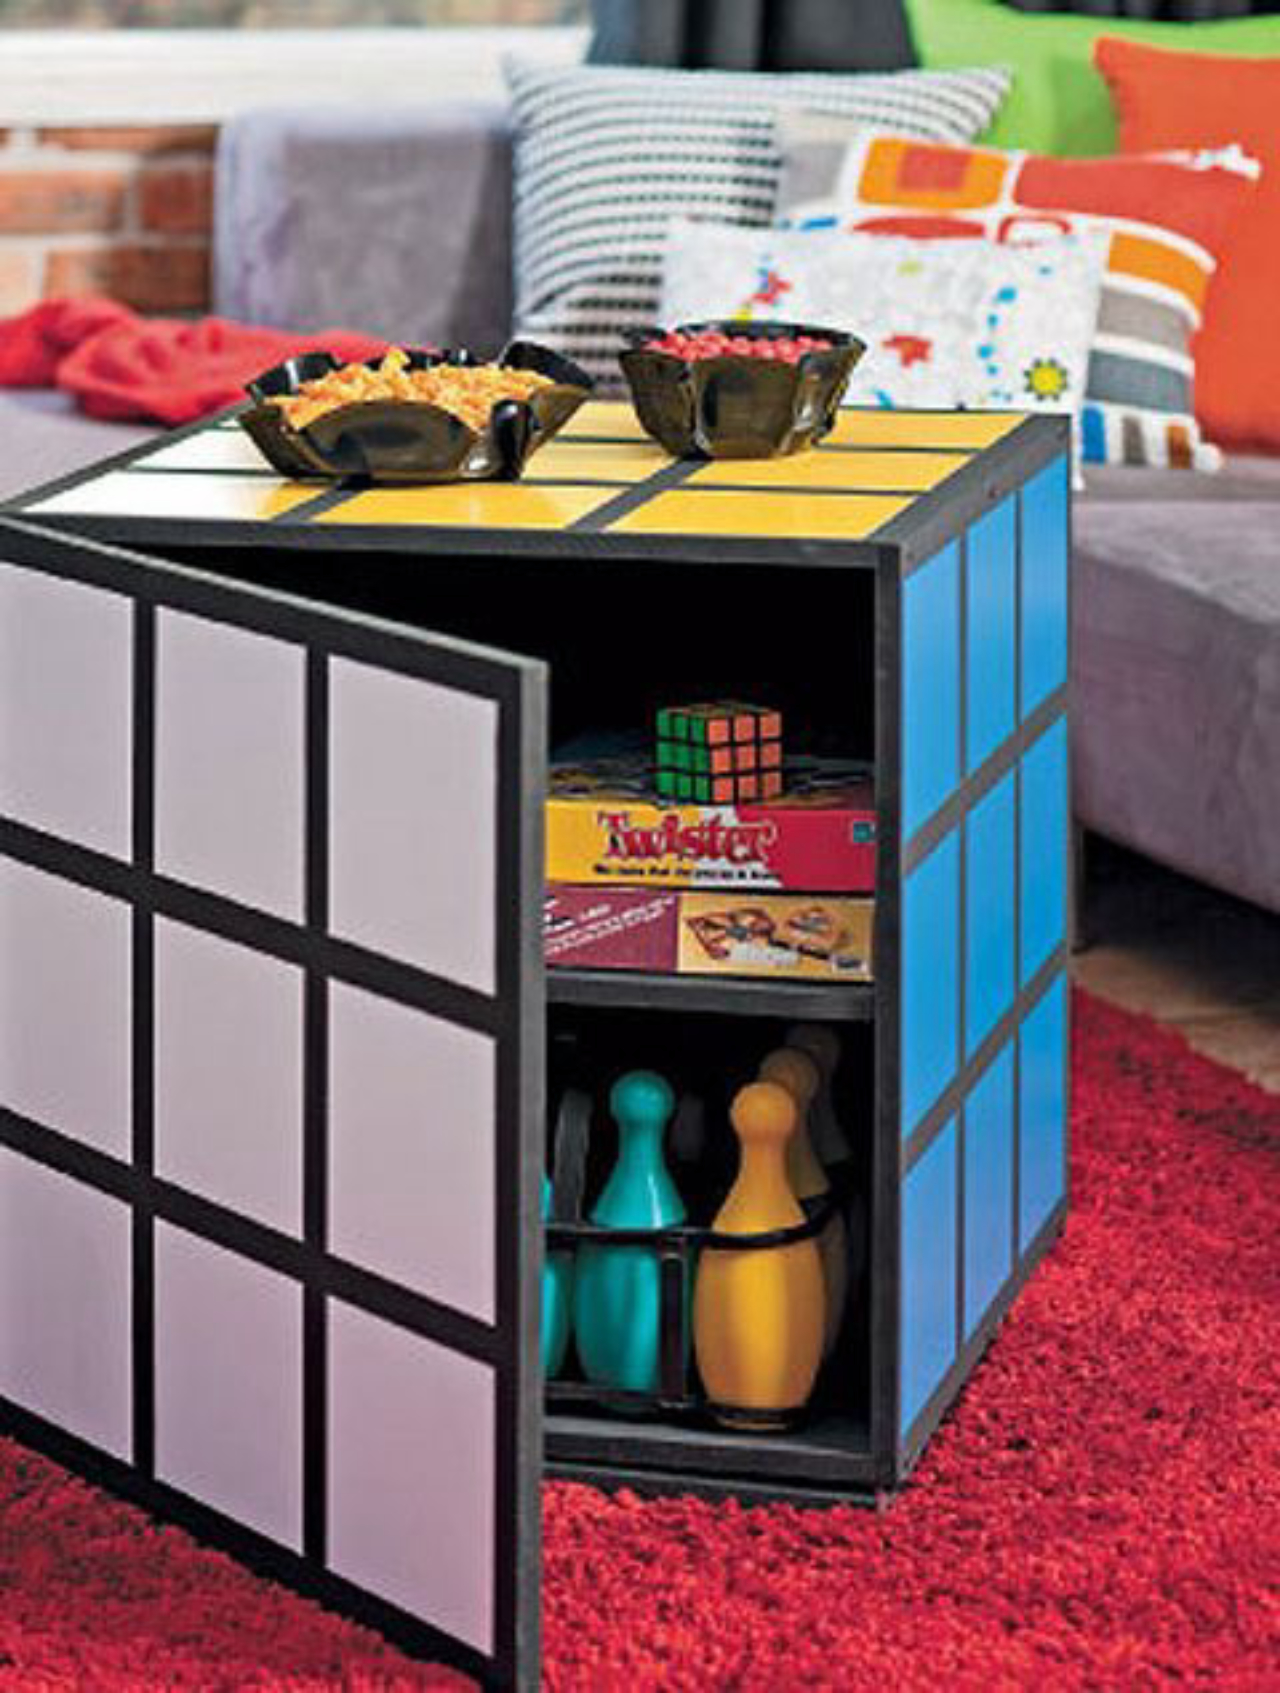 Mesa em forma de cubo mágico também é uma boa pedida para dar cor e descontração ao ambiente. Foto: Reprodução Pinterest